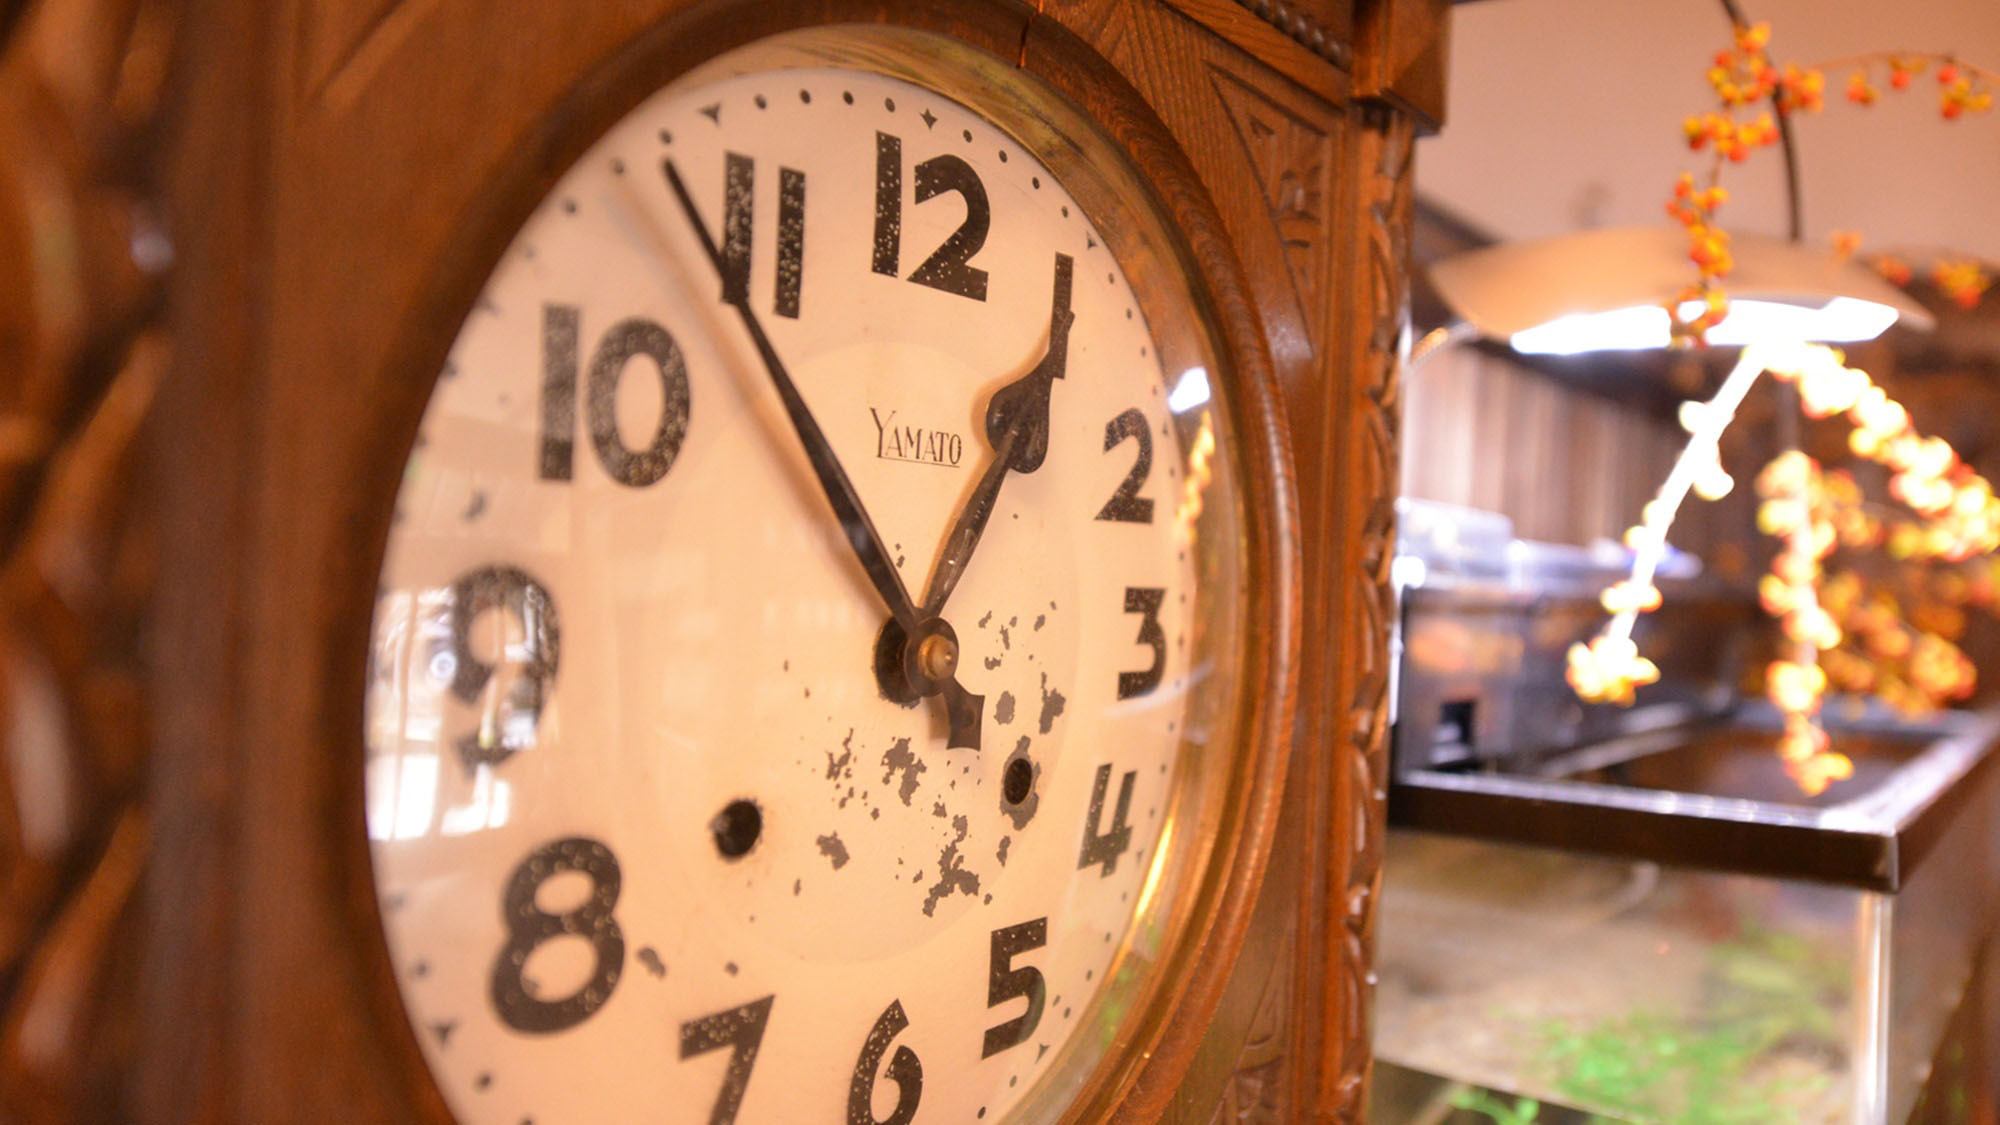 *130年以上の歴史ある老舗旅館をずっと見守り続けた古時計。※現在は止まっています。